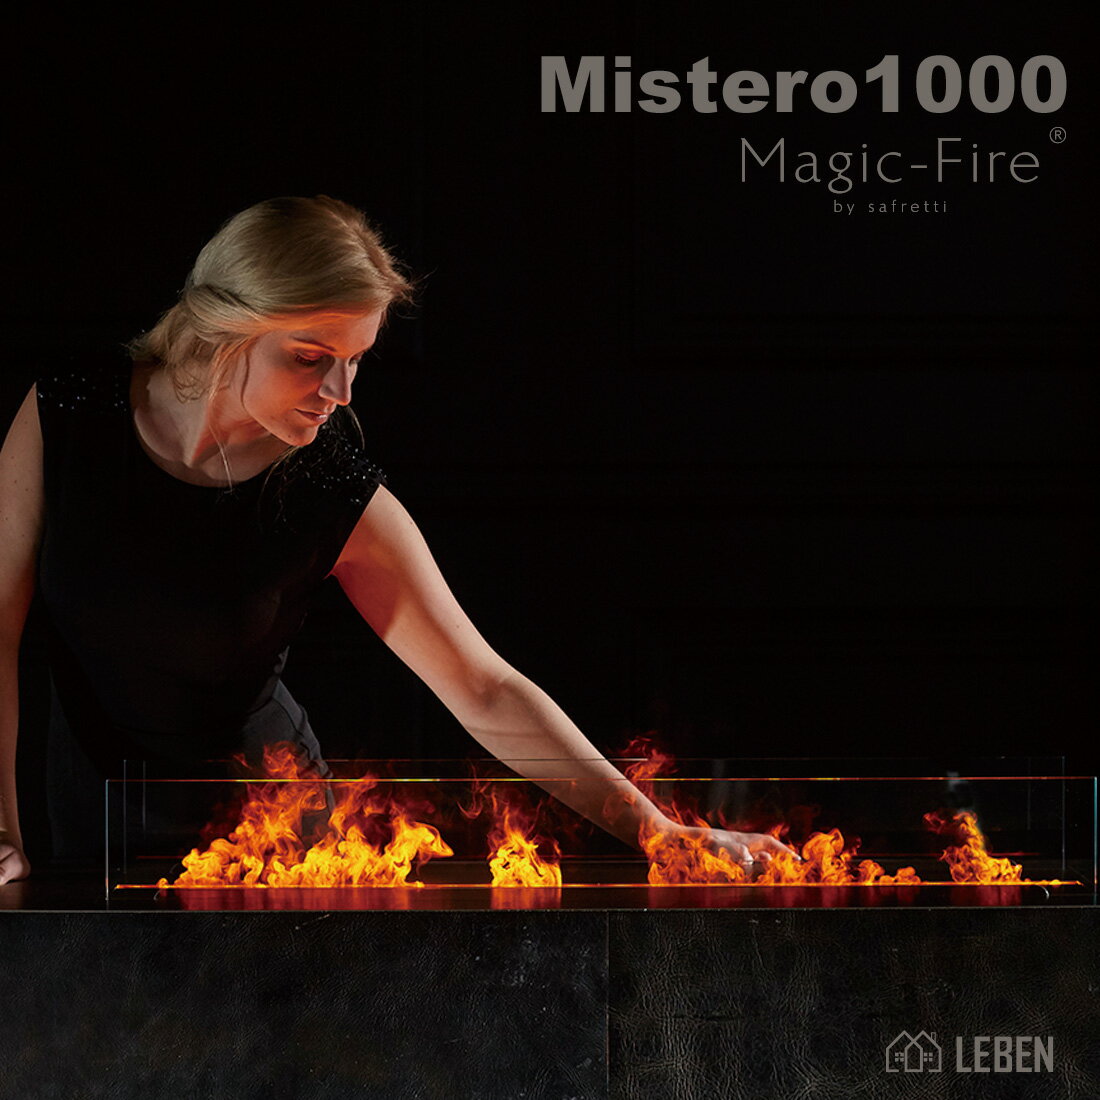 Magic-Fire Mistero1000 マジックファイヤ　ミステロ1000オランダ製 バイオエタノール暖炉の演出効果　 　 火を使えない場所にも簡単に設置できます。レストラン　ホテル　バー　戸建て　マンション　安心安全2年保証 Safretti社製（リモコン付き）（炎の高さ6段階調整可）